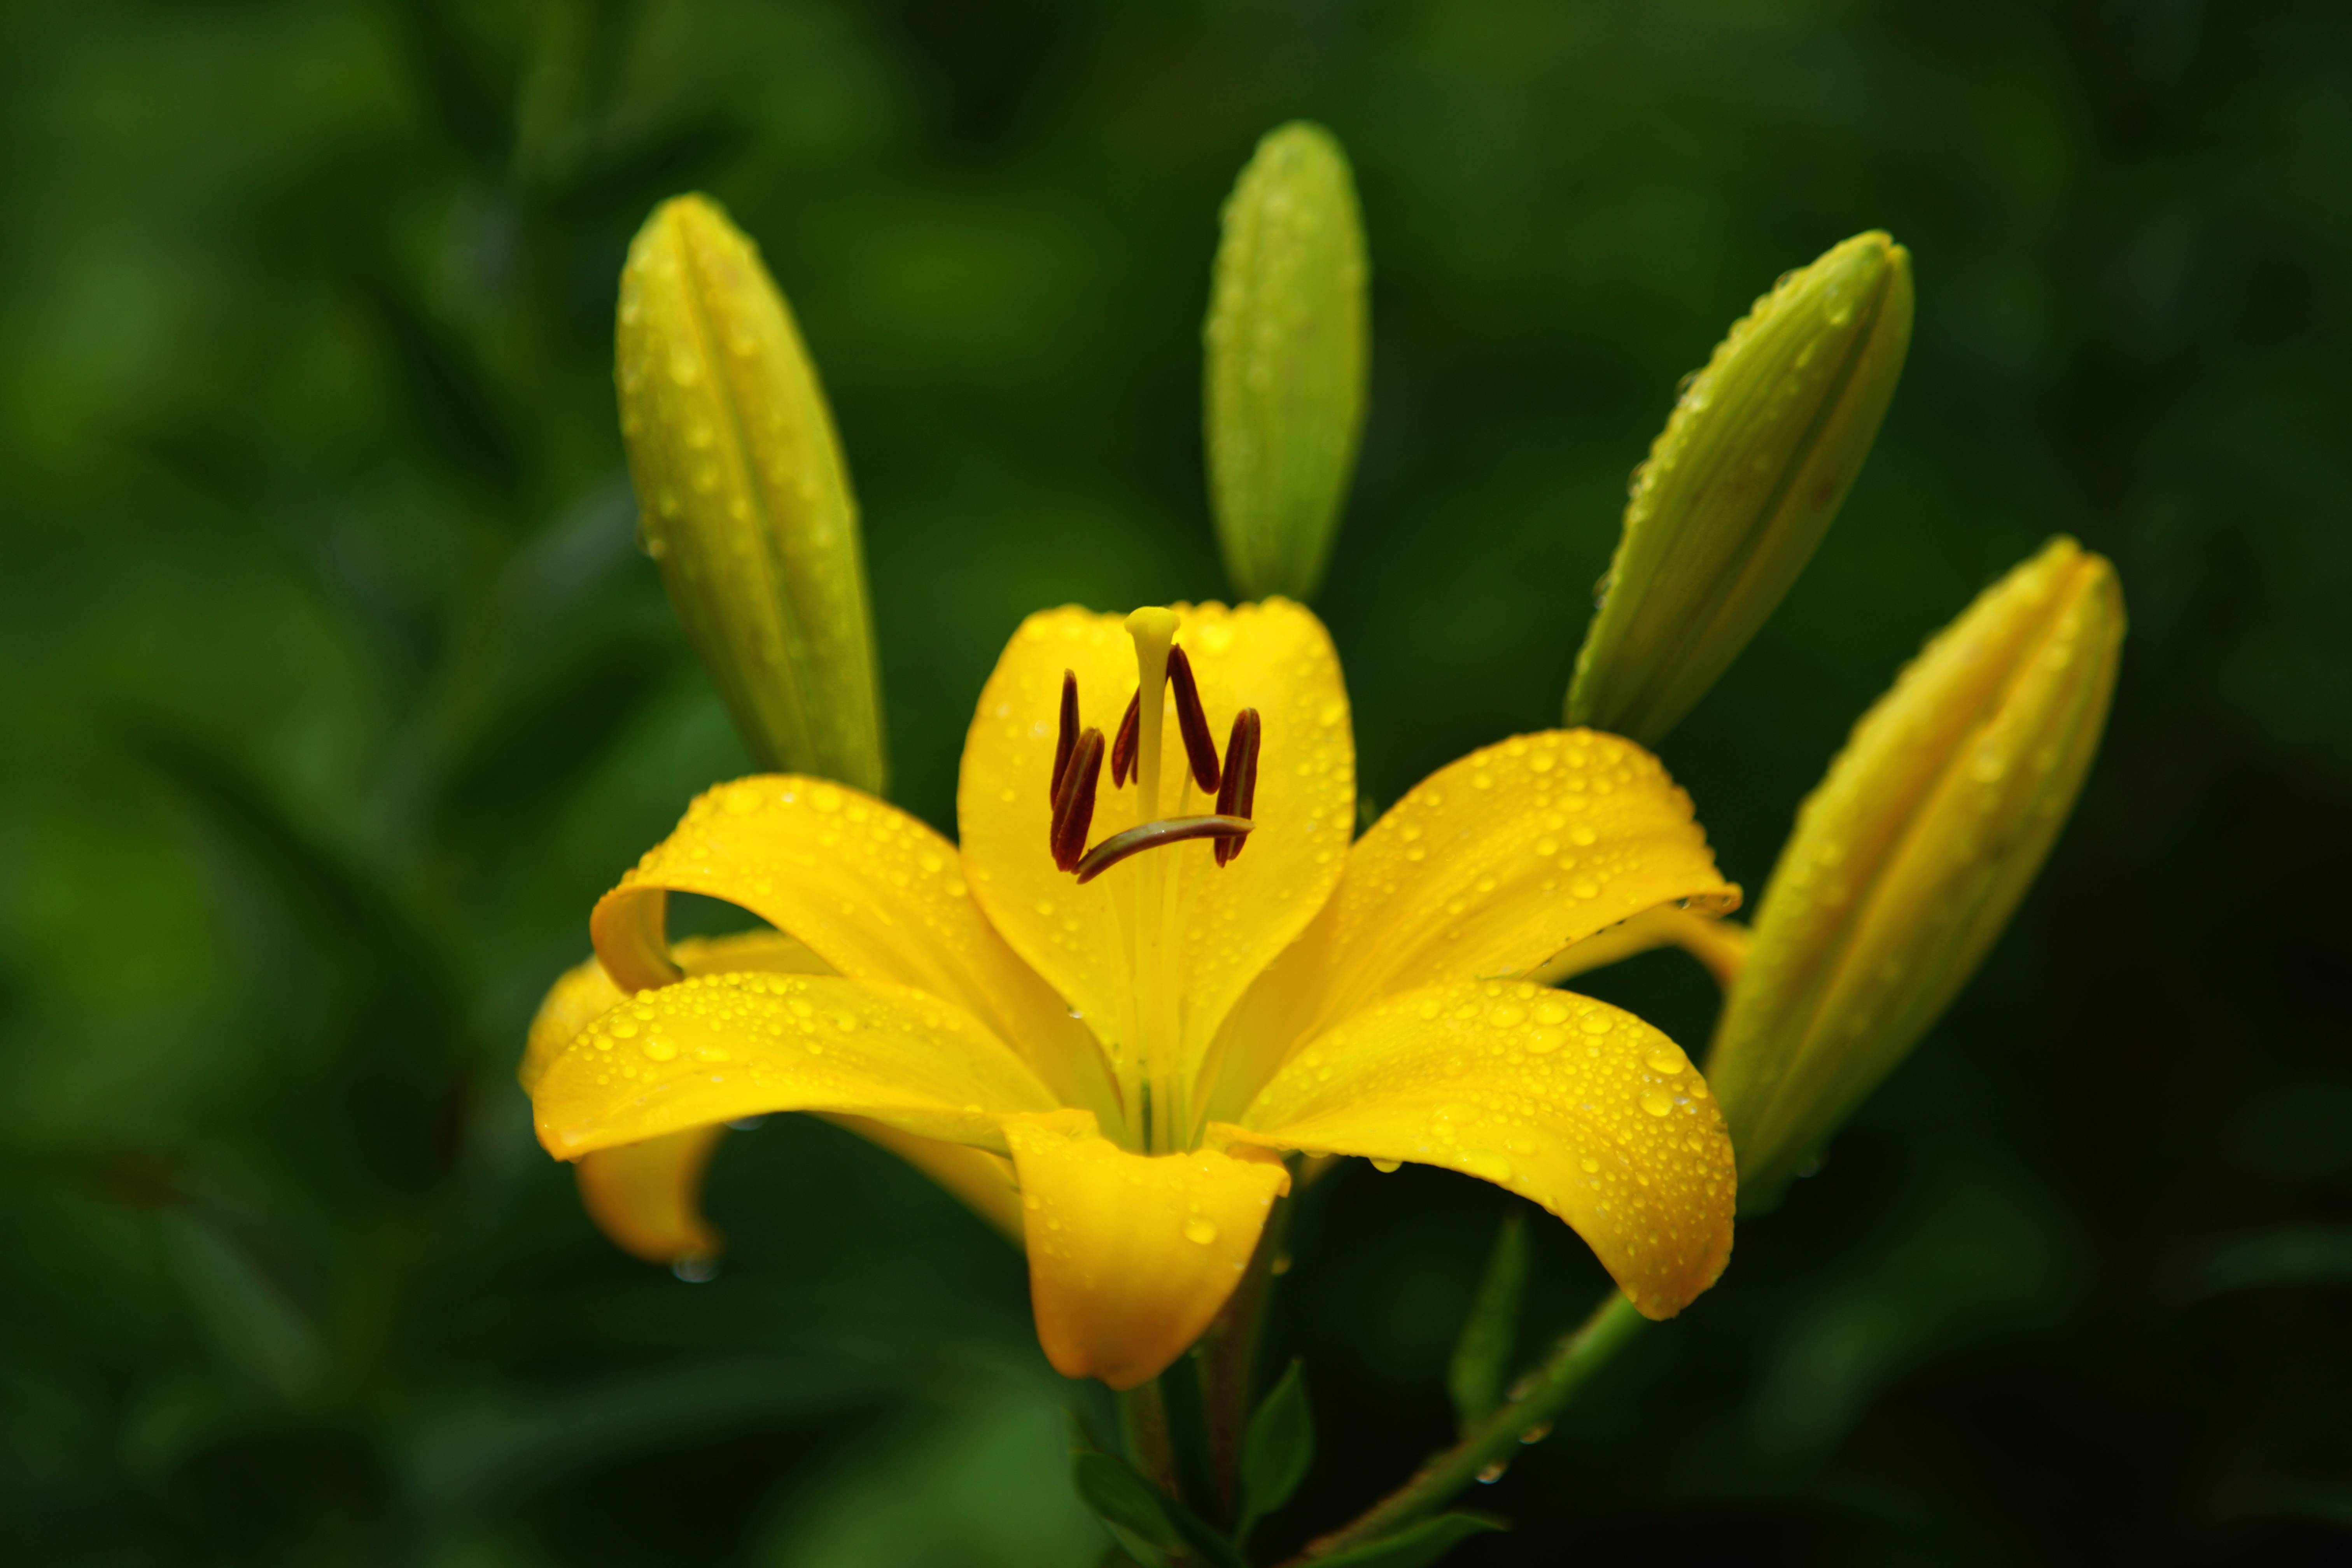 Фото желтые цветы лилии желтые лепестки - бесплатные картинки на Fonwall